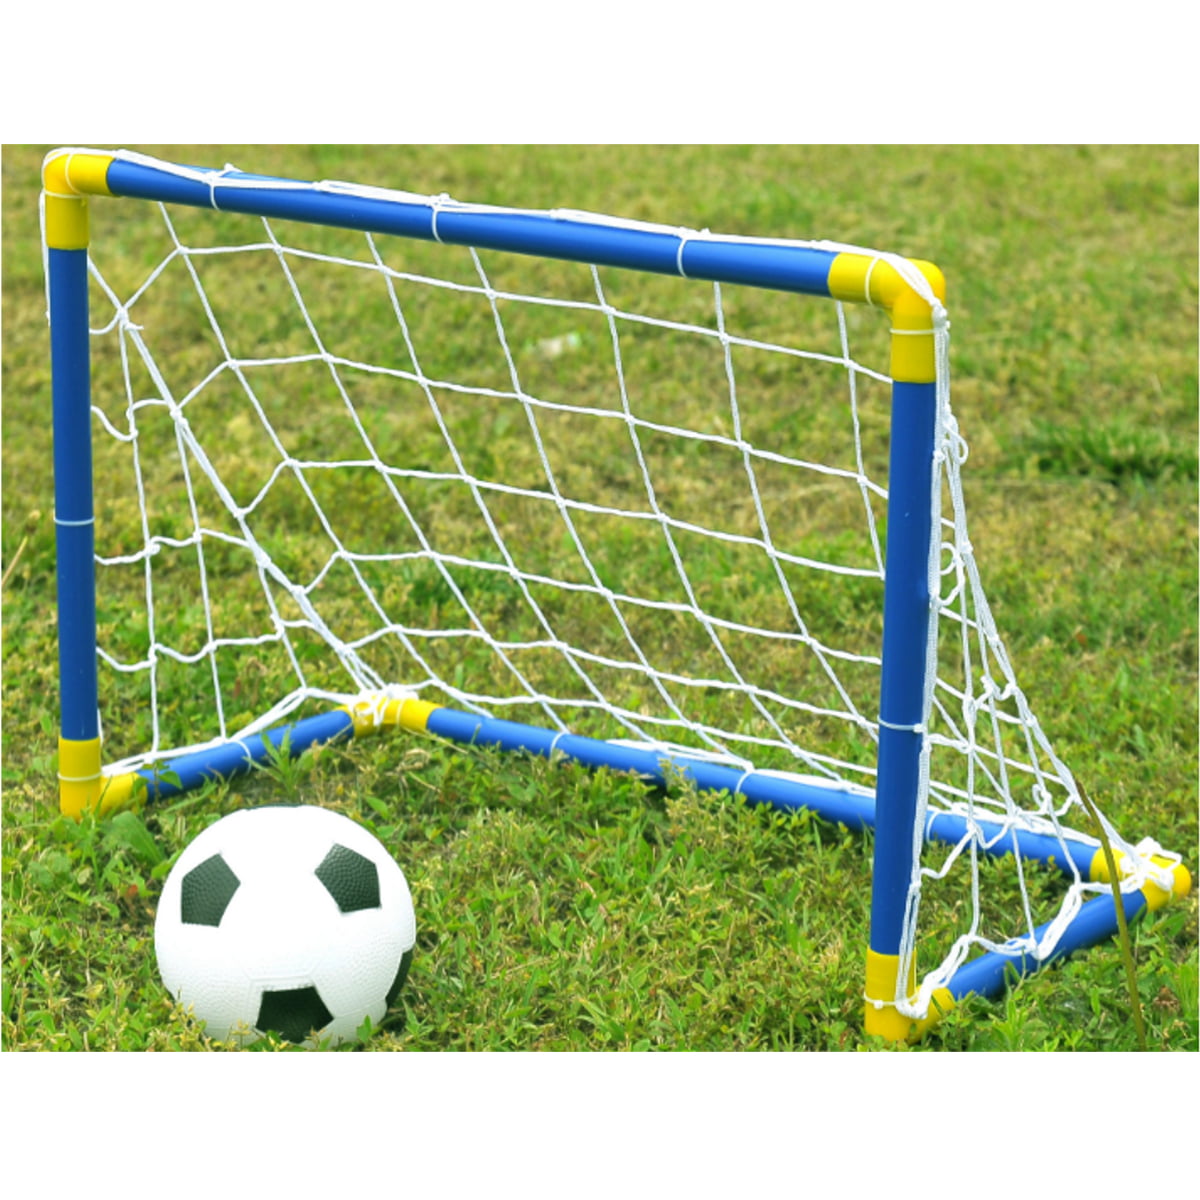 6 x 4ft Football Soccer Goal Post Net For Kids Outdoor Football Match  MO0 